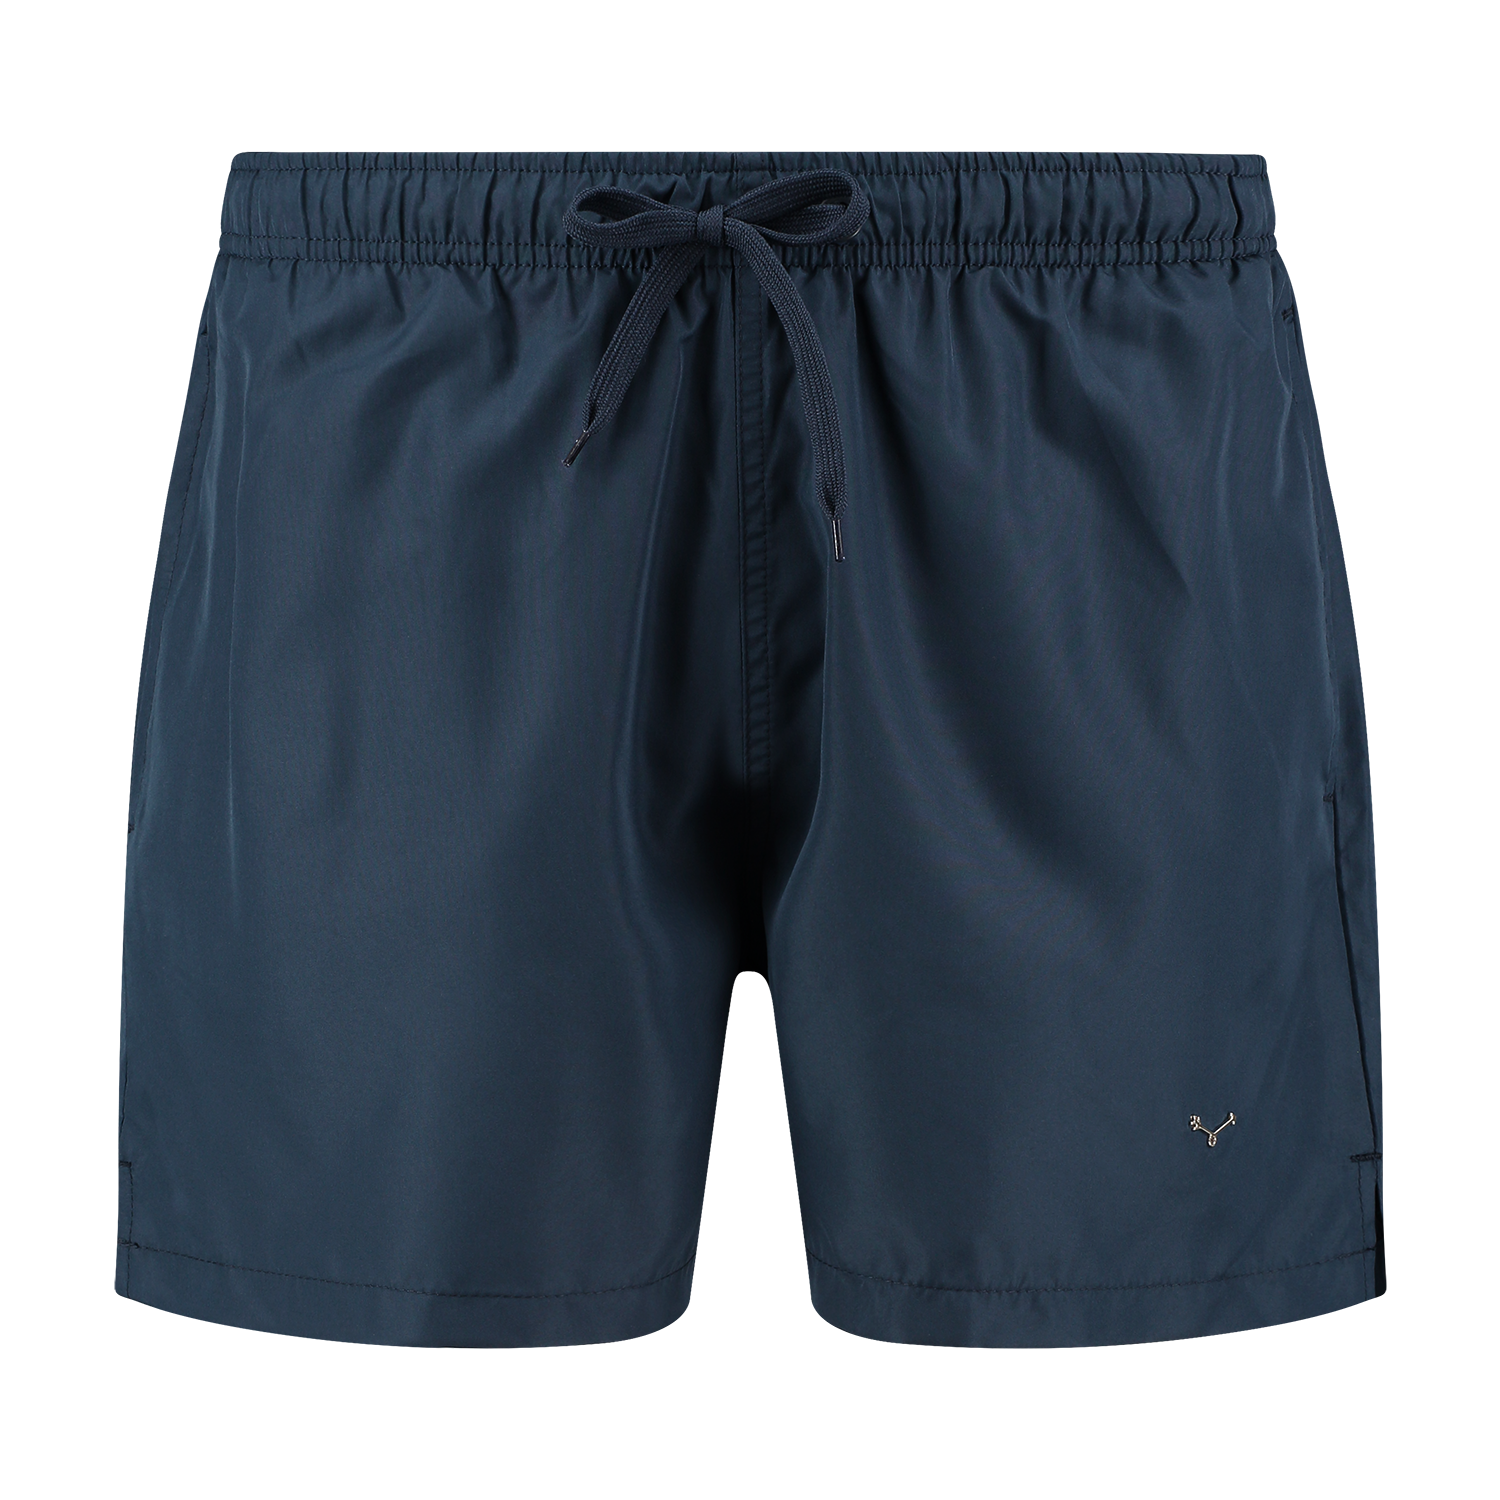 Swim Shorts Navy